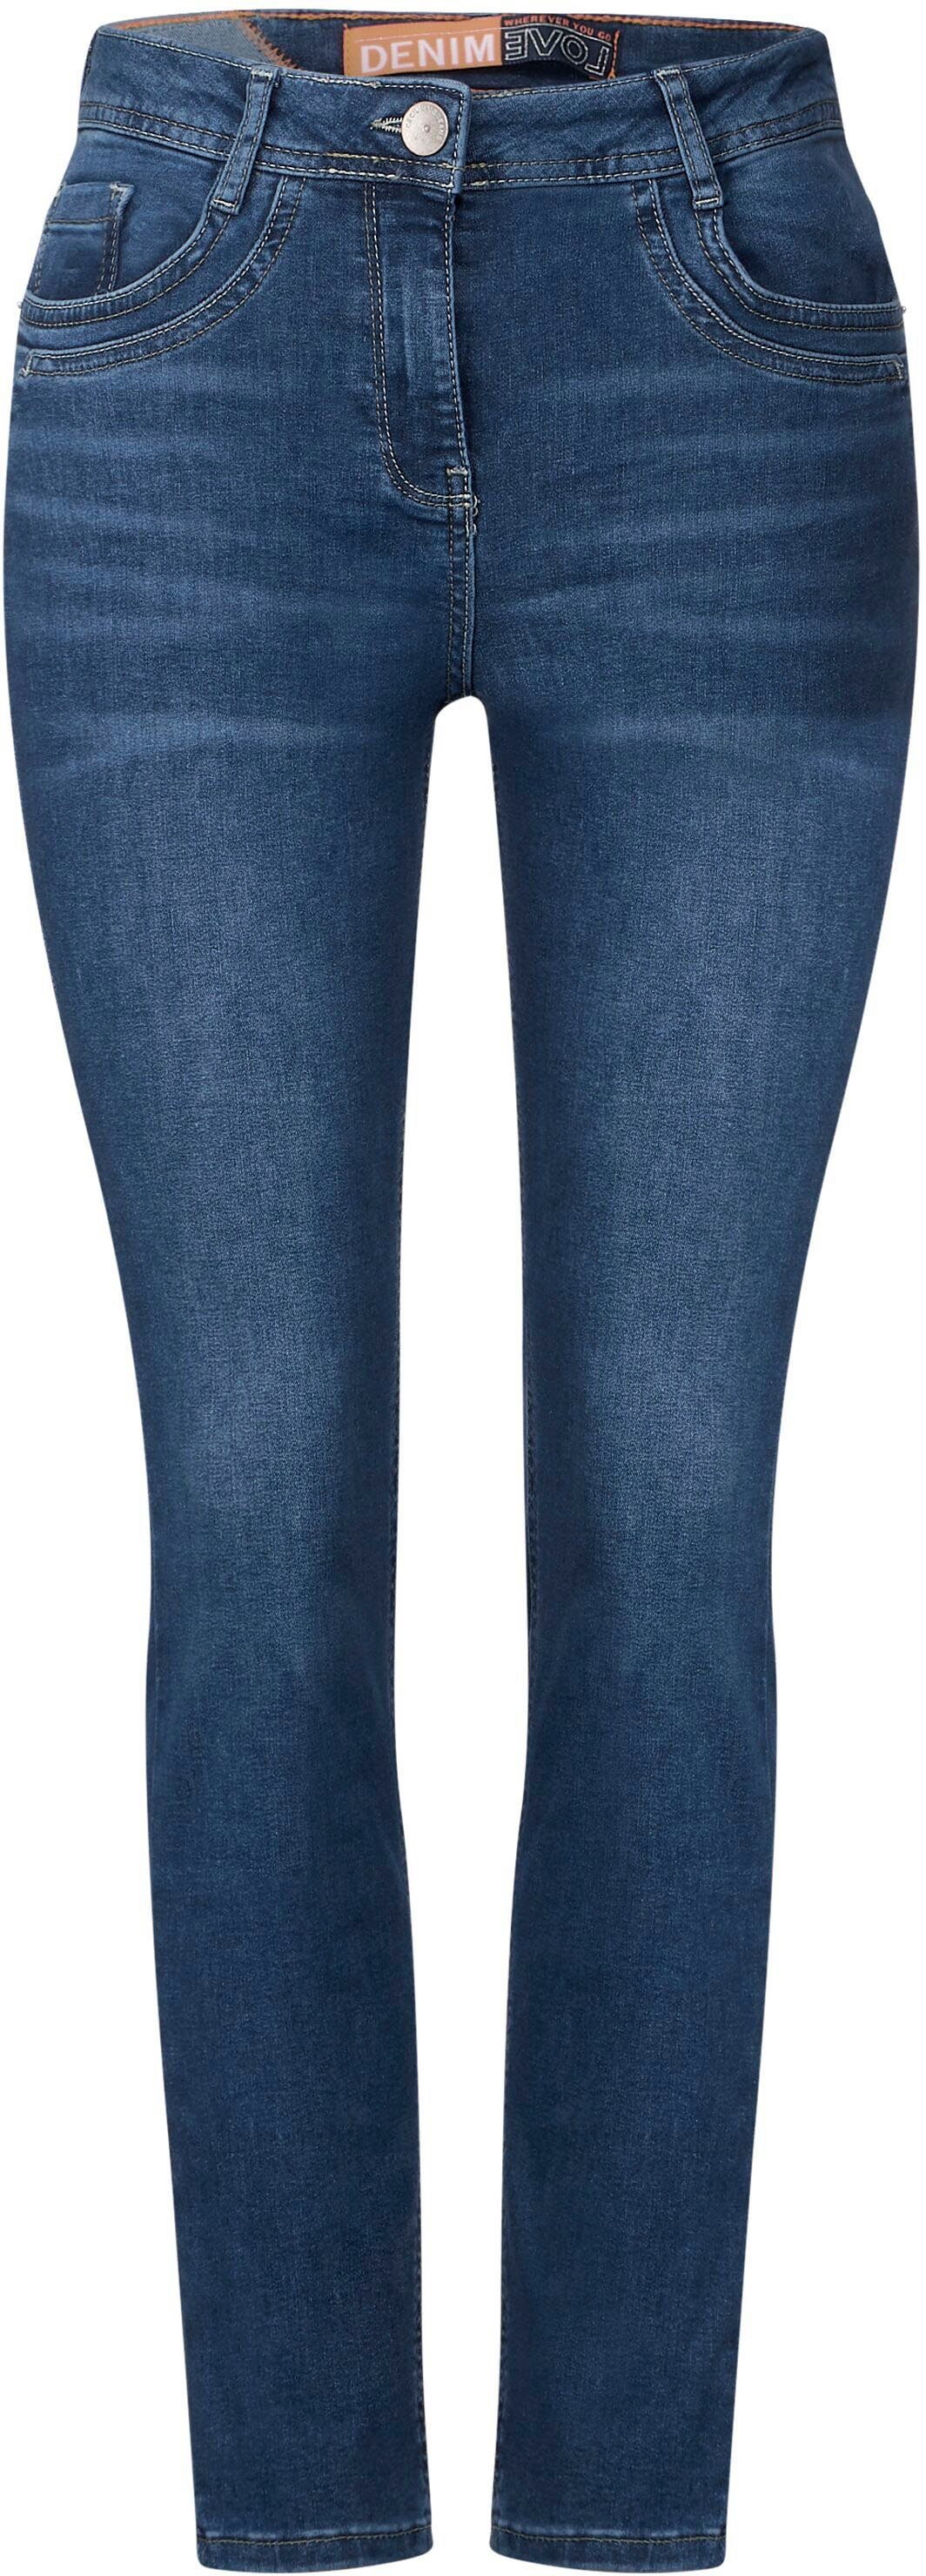 Slim-fit-Jeans Toronto Cecil Ausführung in knöchellanger Style